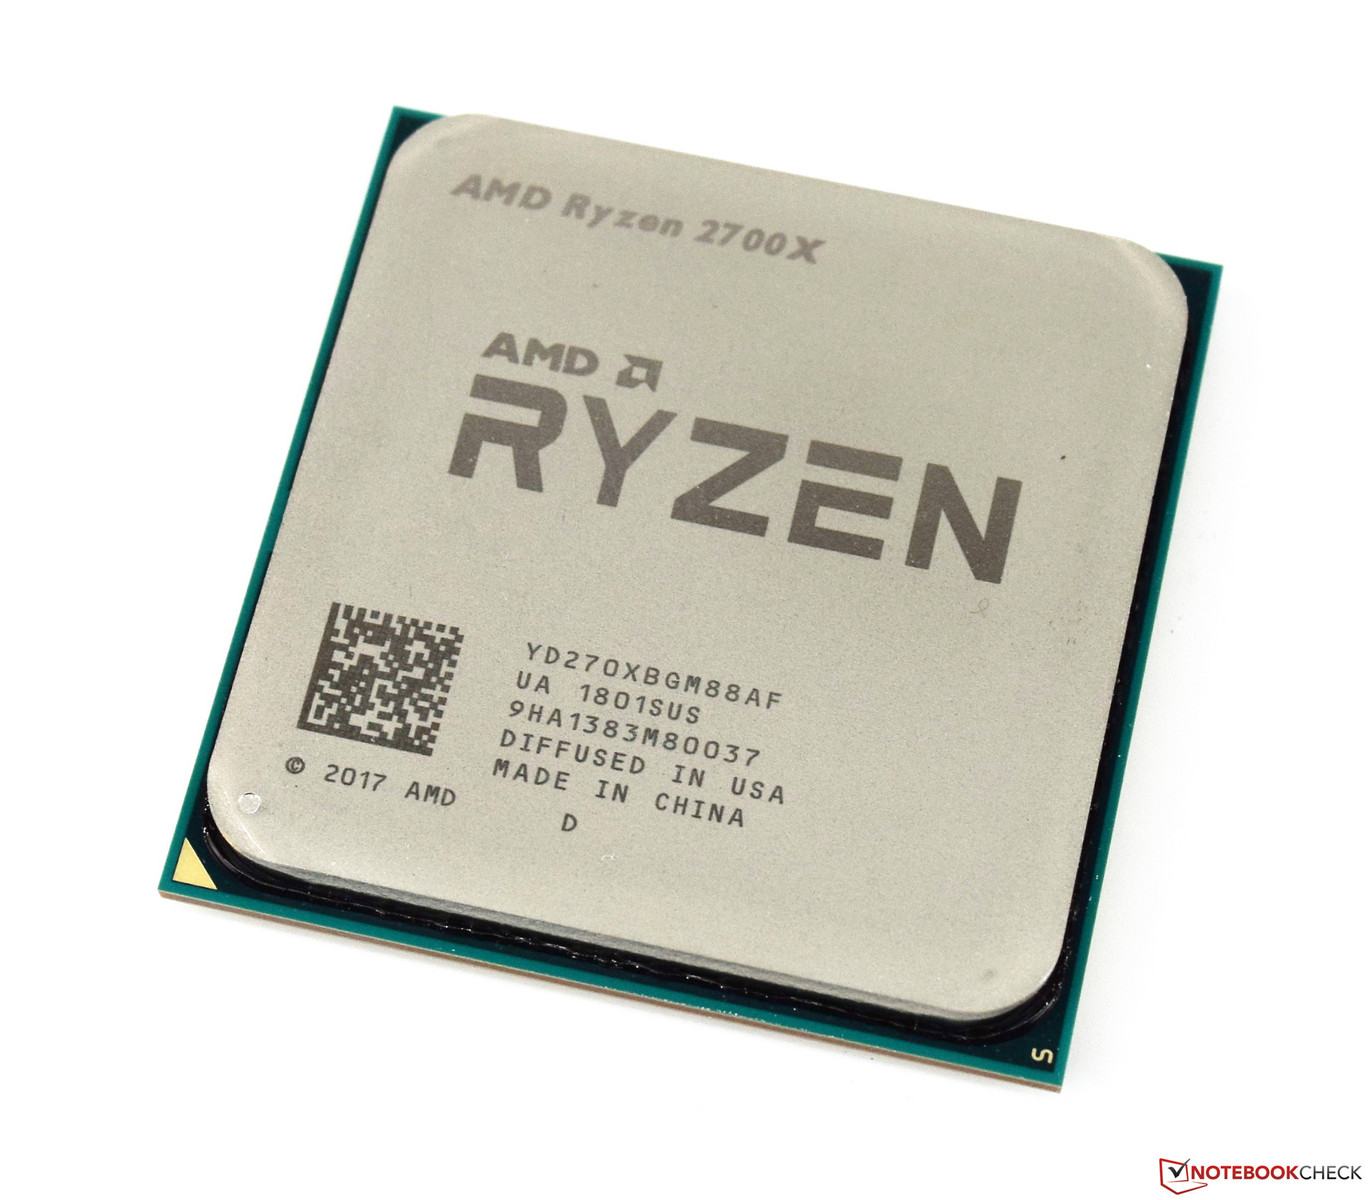 AMD Ryzen 7 2700X Notebook Processor - Notebookcheck.fr